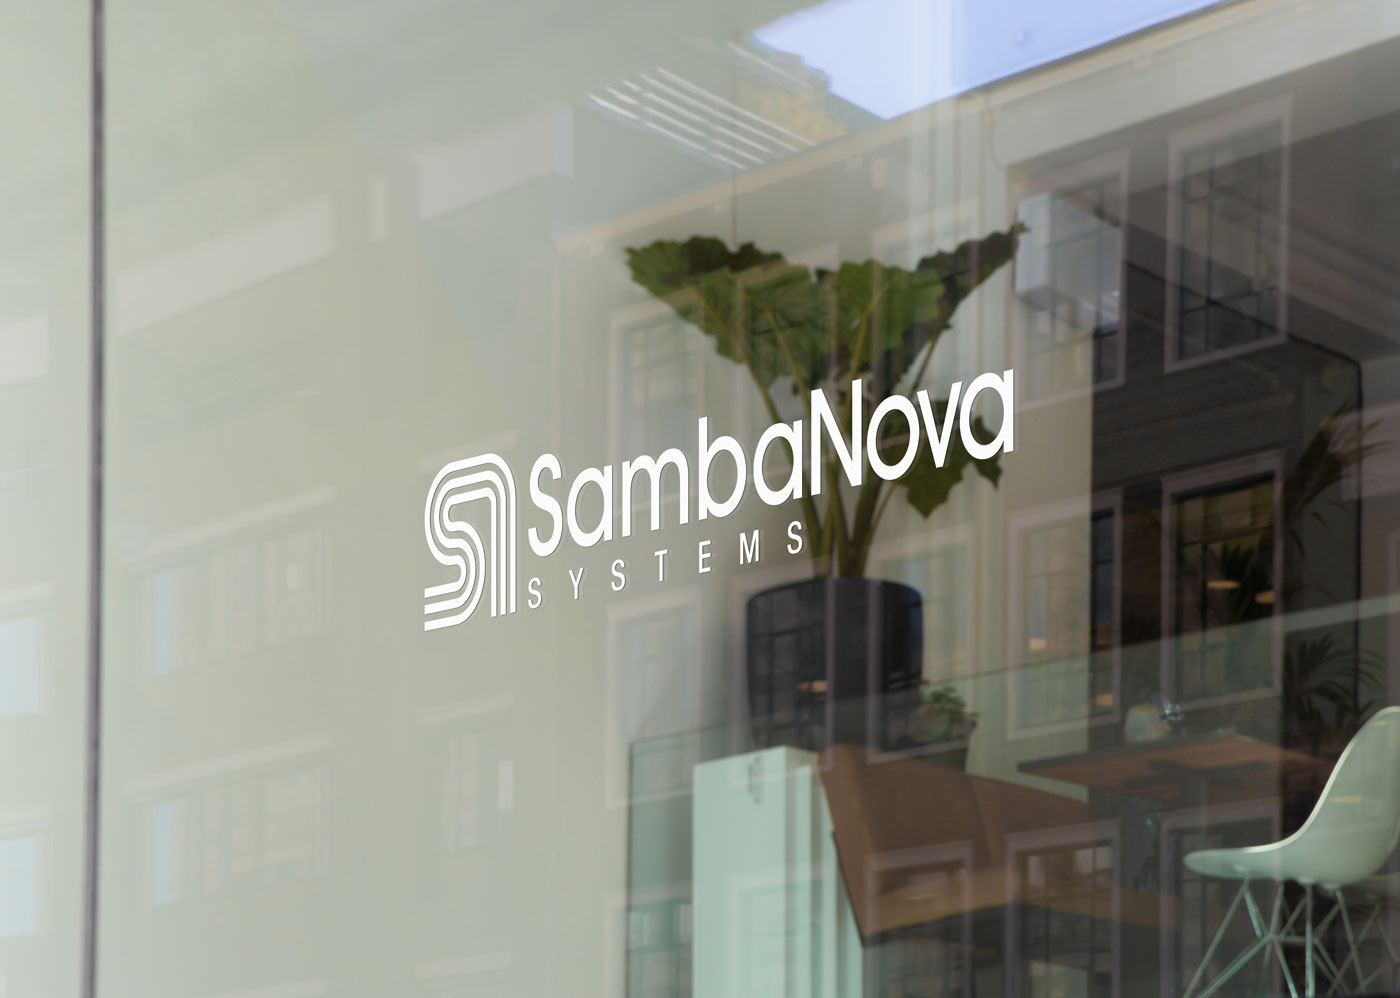 SambaNova Systems Conference Room